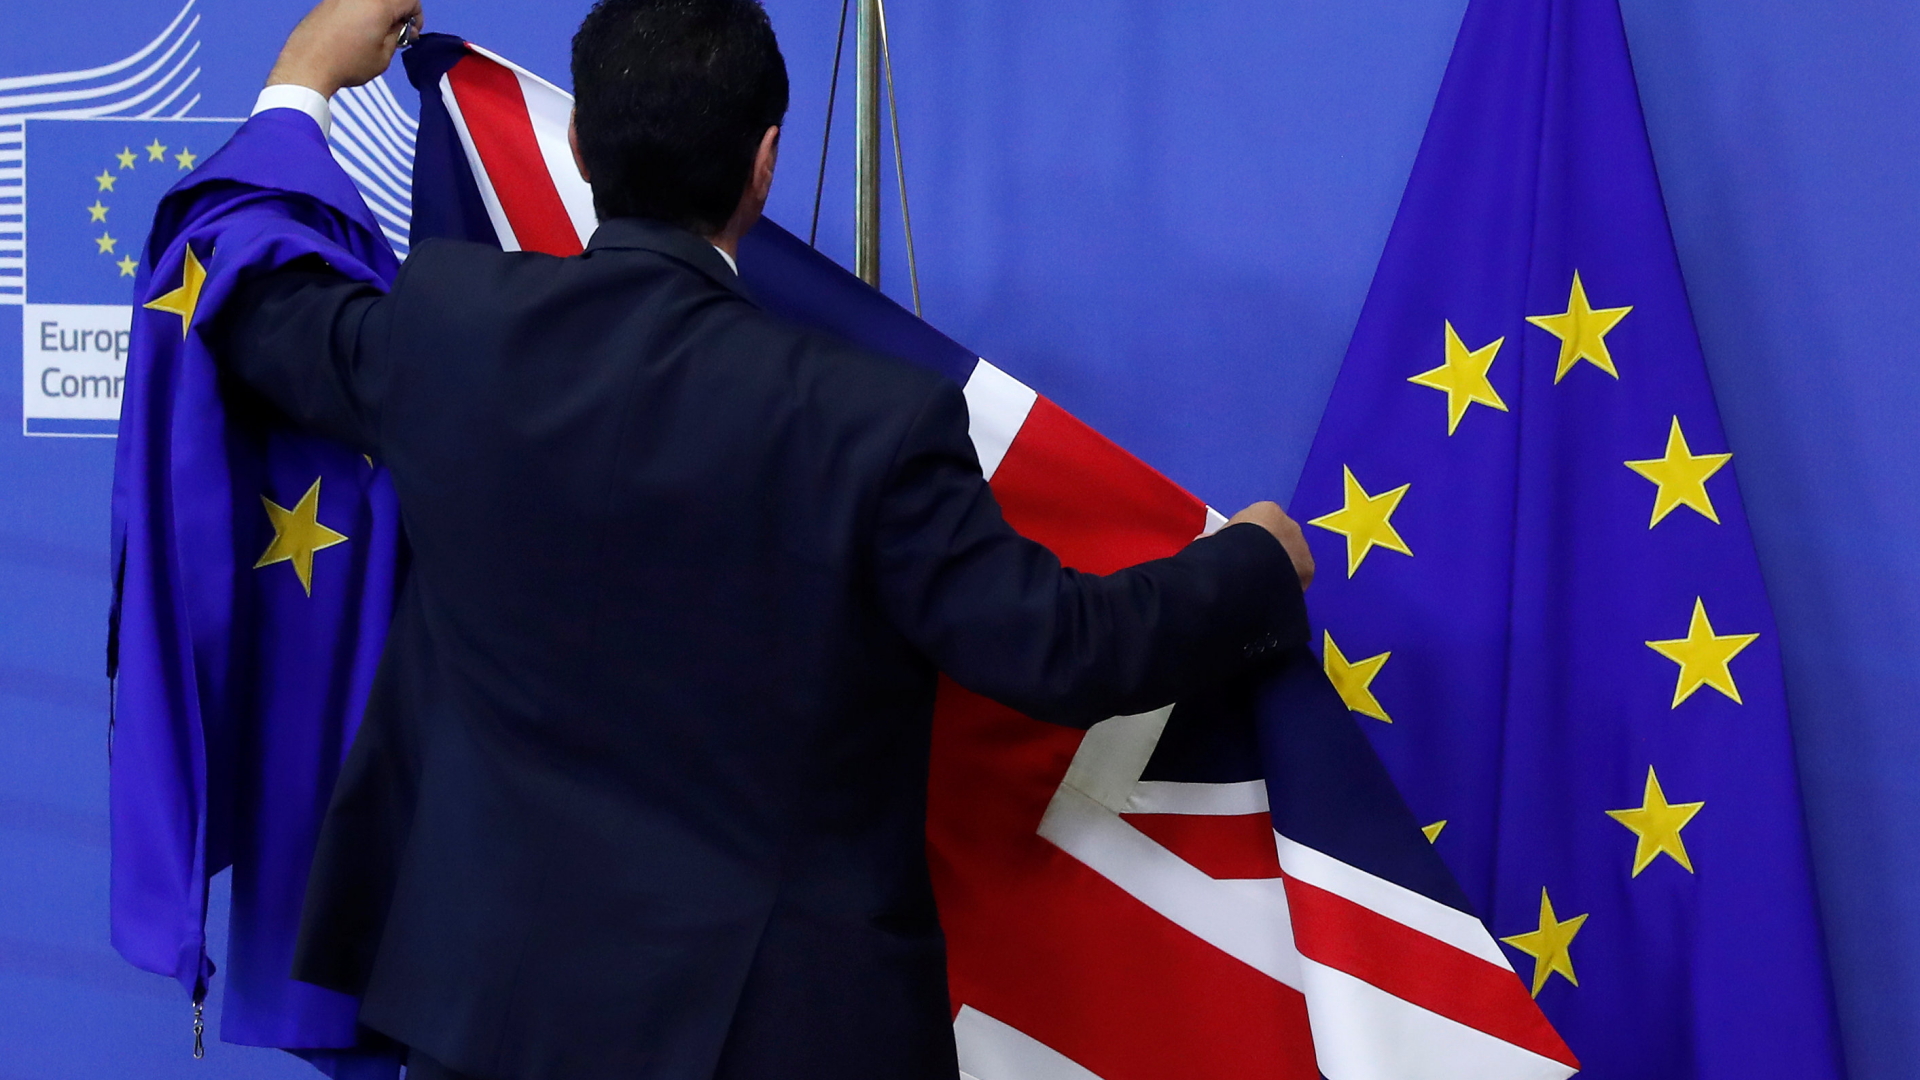 Flaggen der Europäischen Union und Großbritanniens werden aufgehängt. | REUTERS